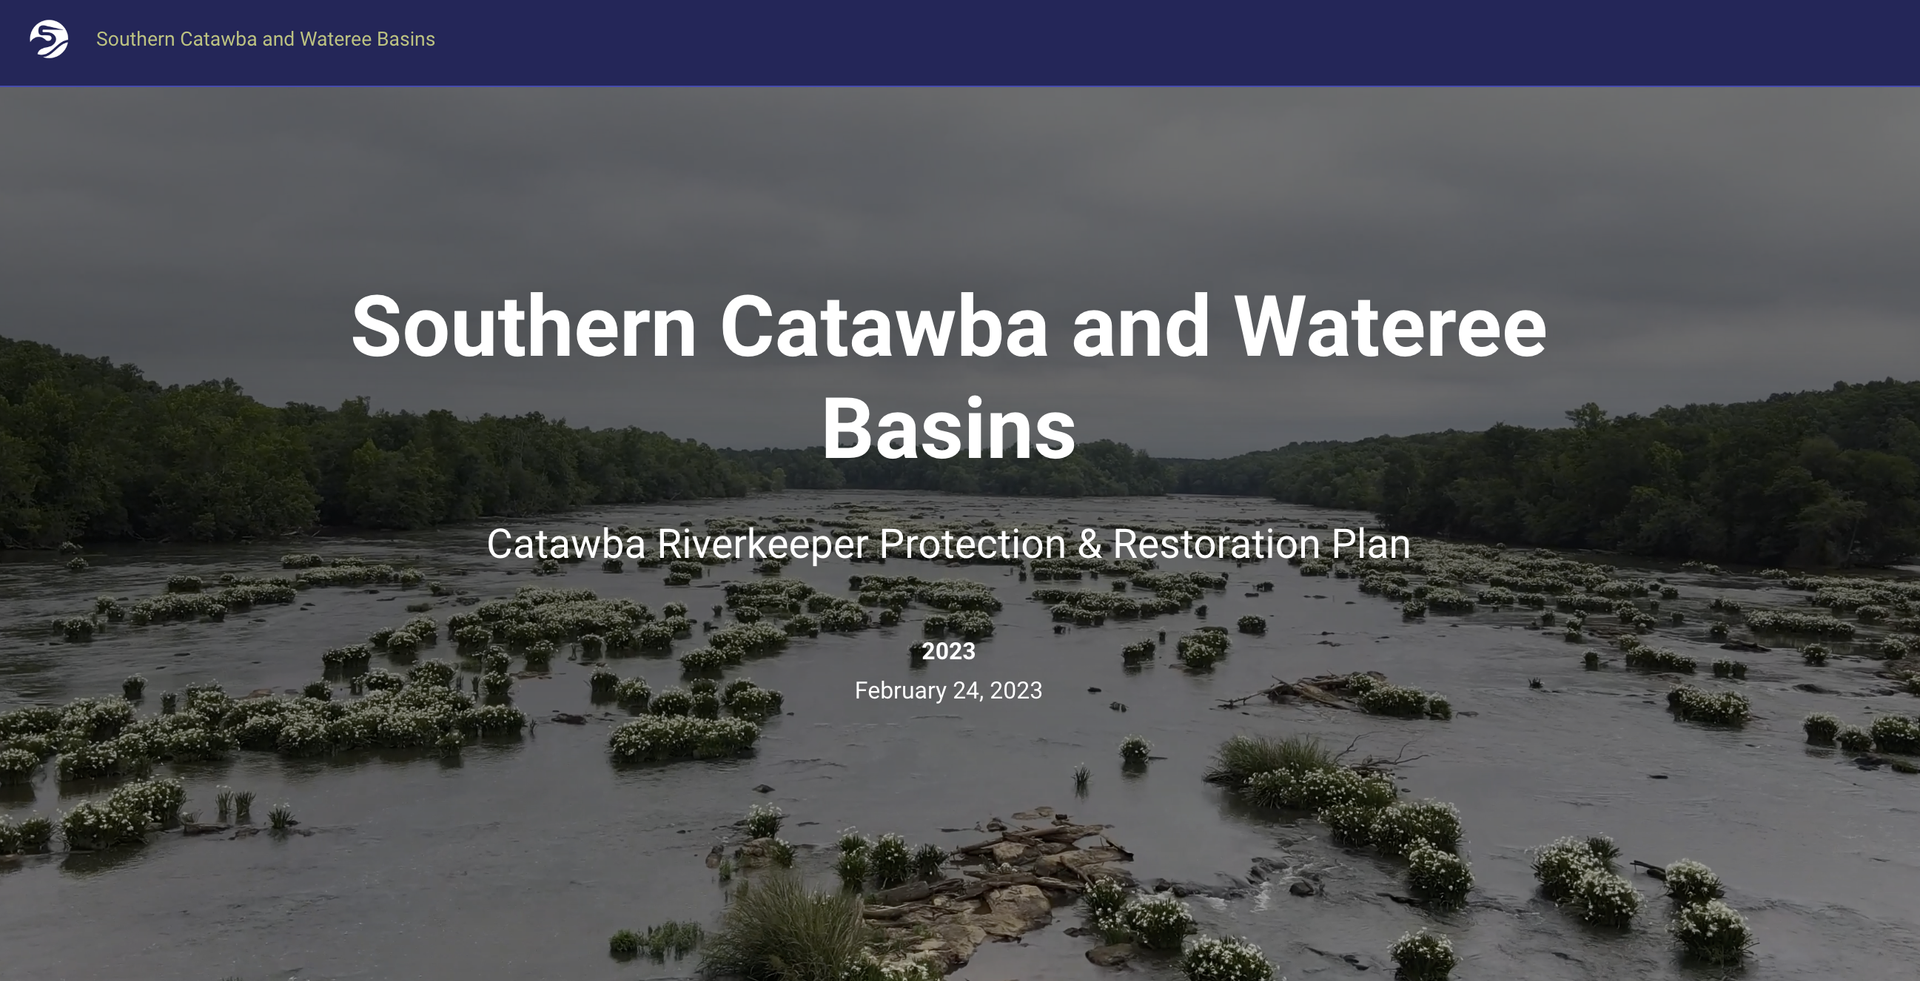 The Catawba Riverkeeper, Southern Catawba and Wateree Basins